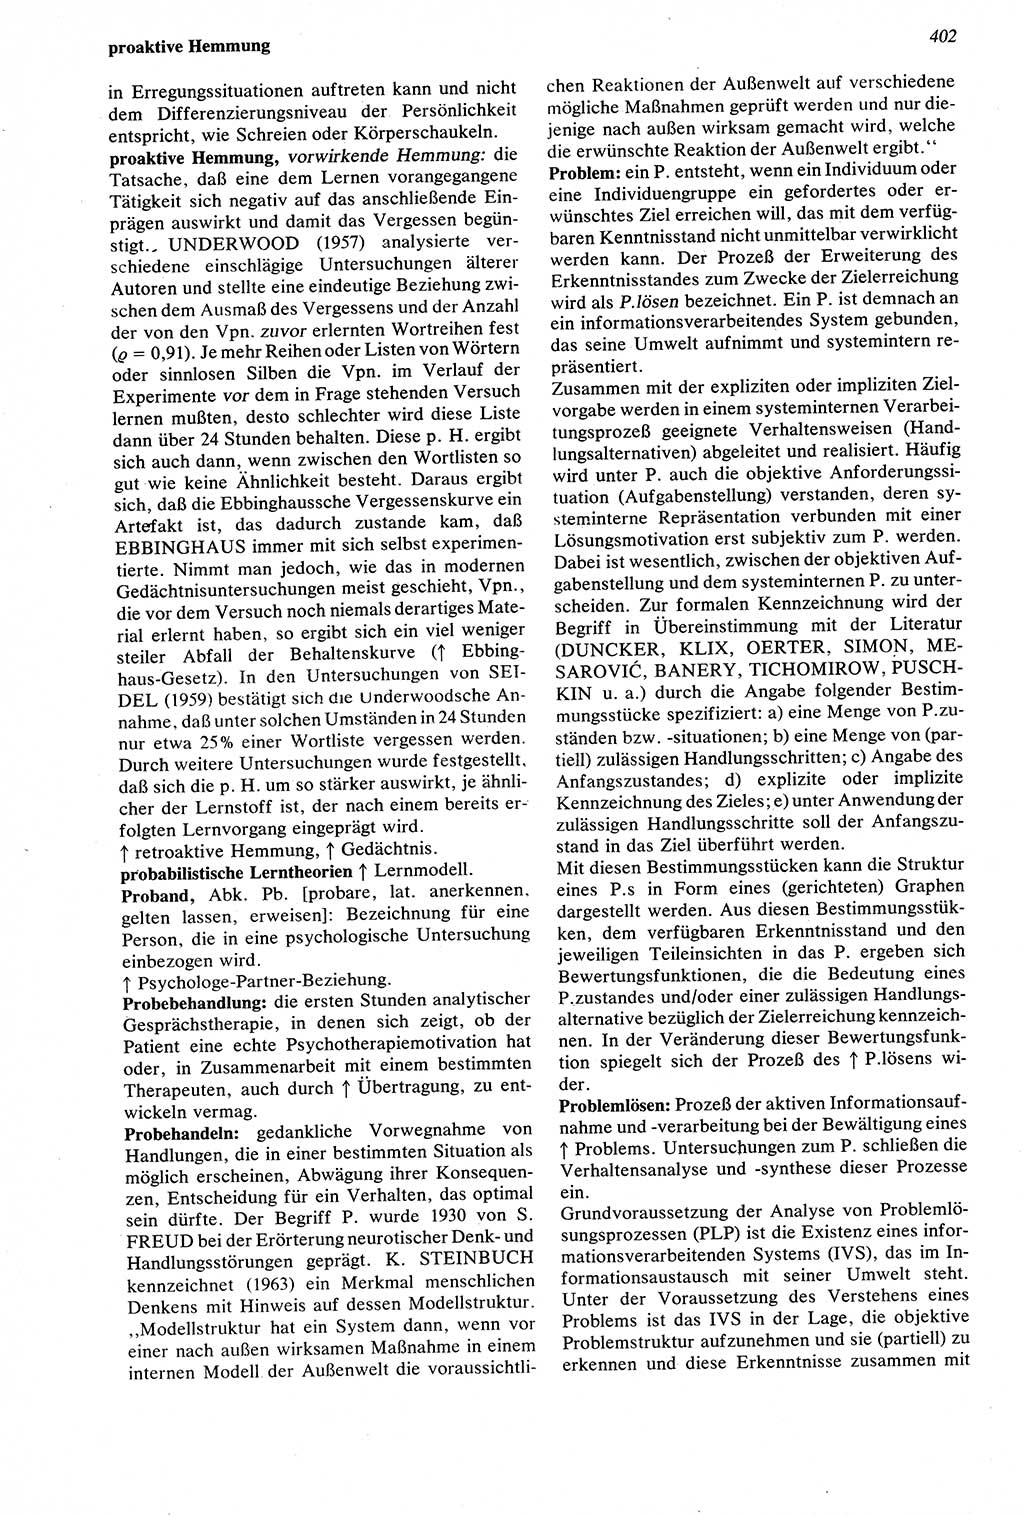 Wörterbuch der Psychologie [Deutsche Demokratische Republik (DDR)] 1976, Seite 402 (Wb. Psych. DDR 1976, S. 402)